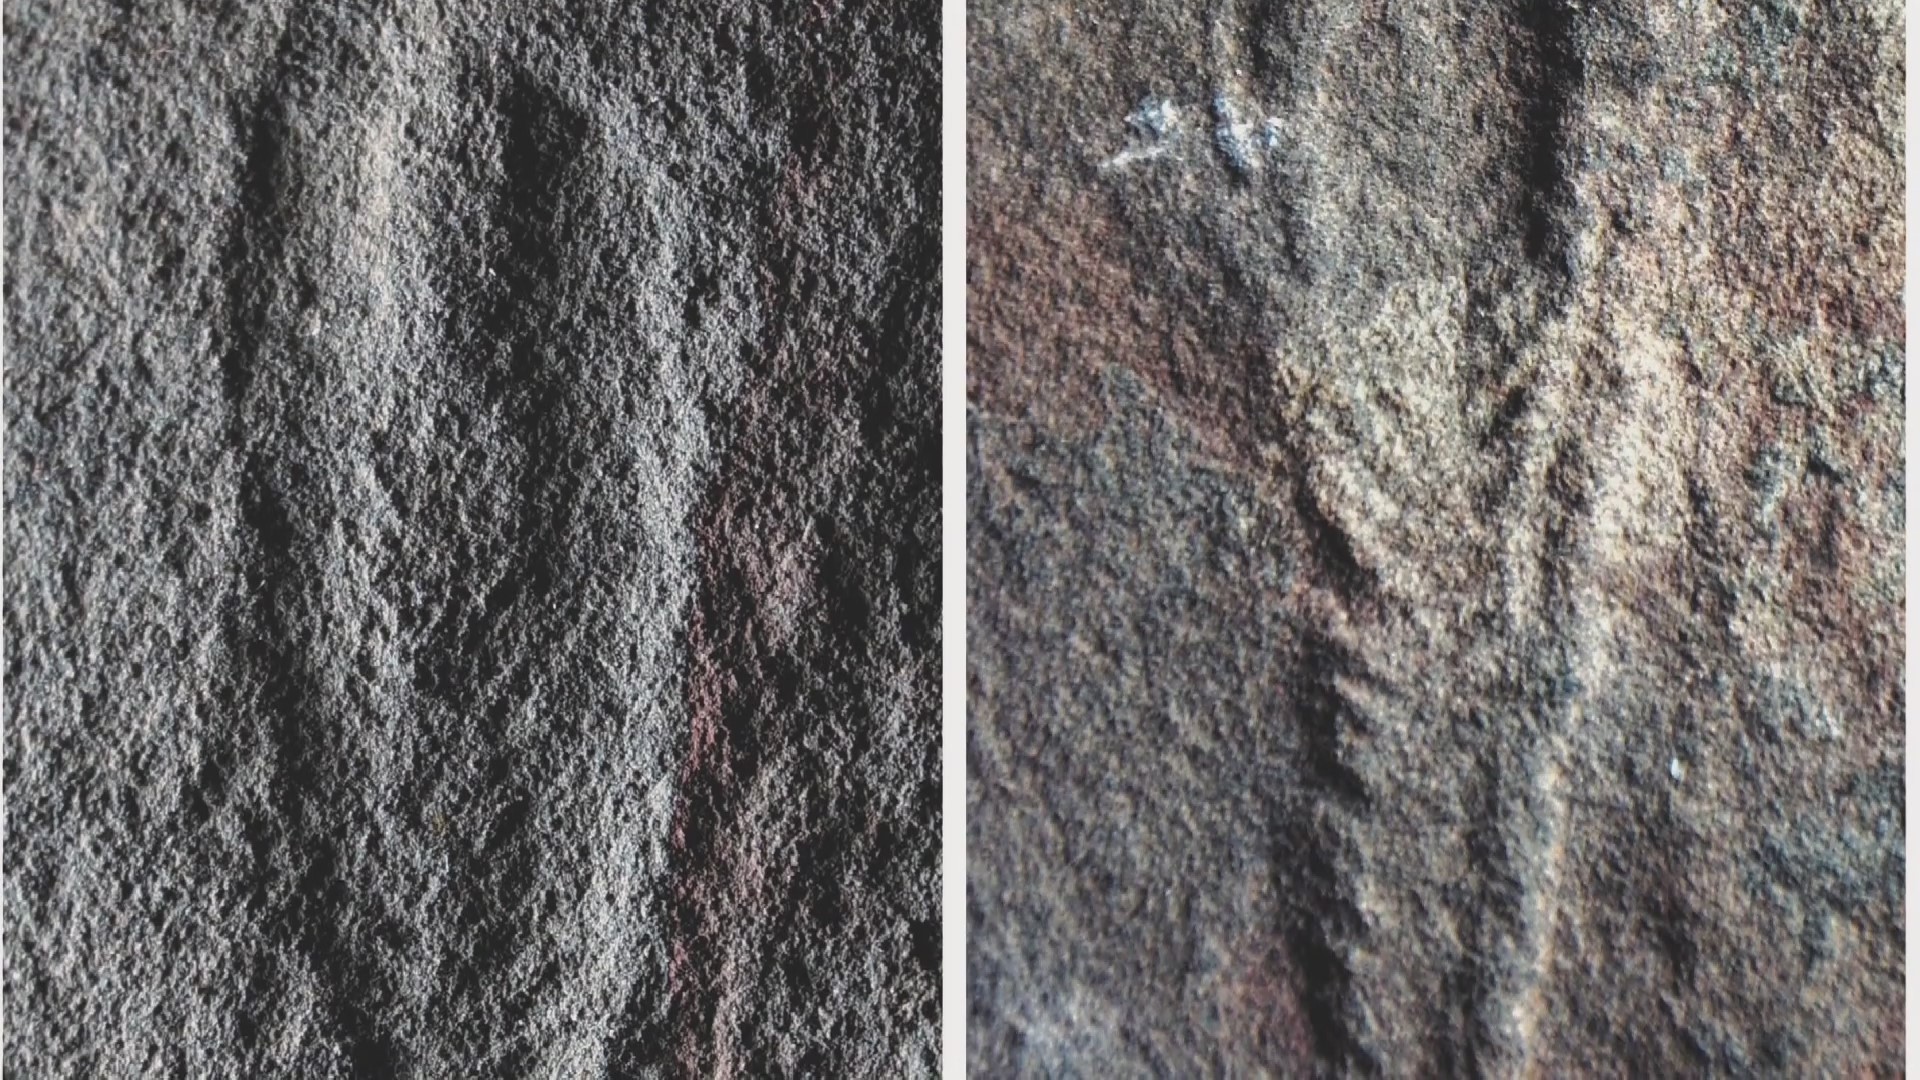 นักโบราณคดีพบฟอสซิลอายุ '550 ล้านปี' ก้นแม่น้ำแยงซีตอนบน